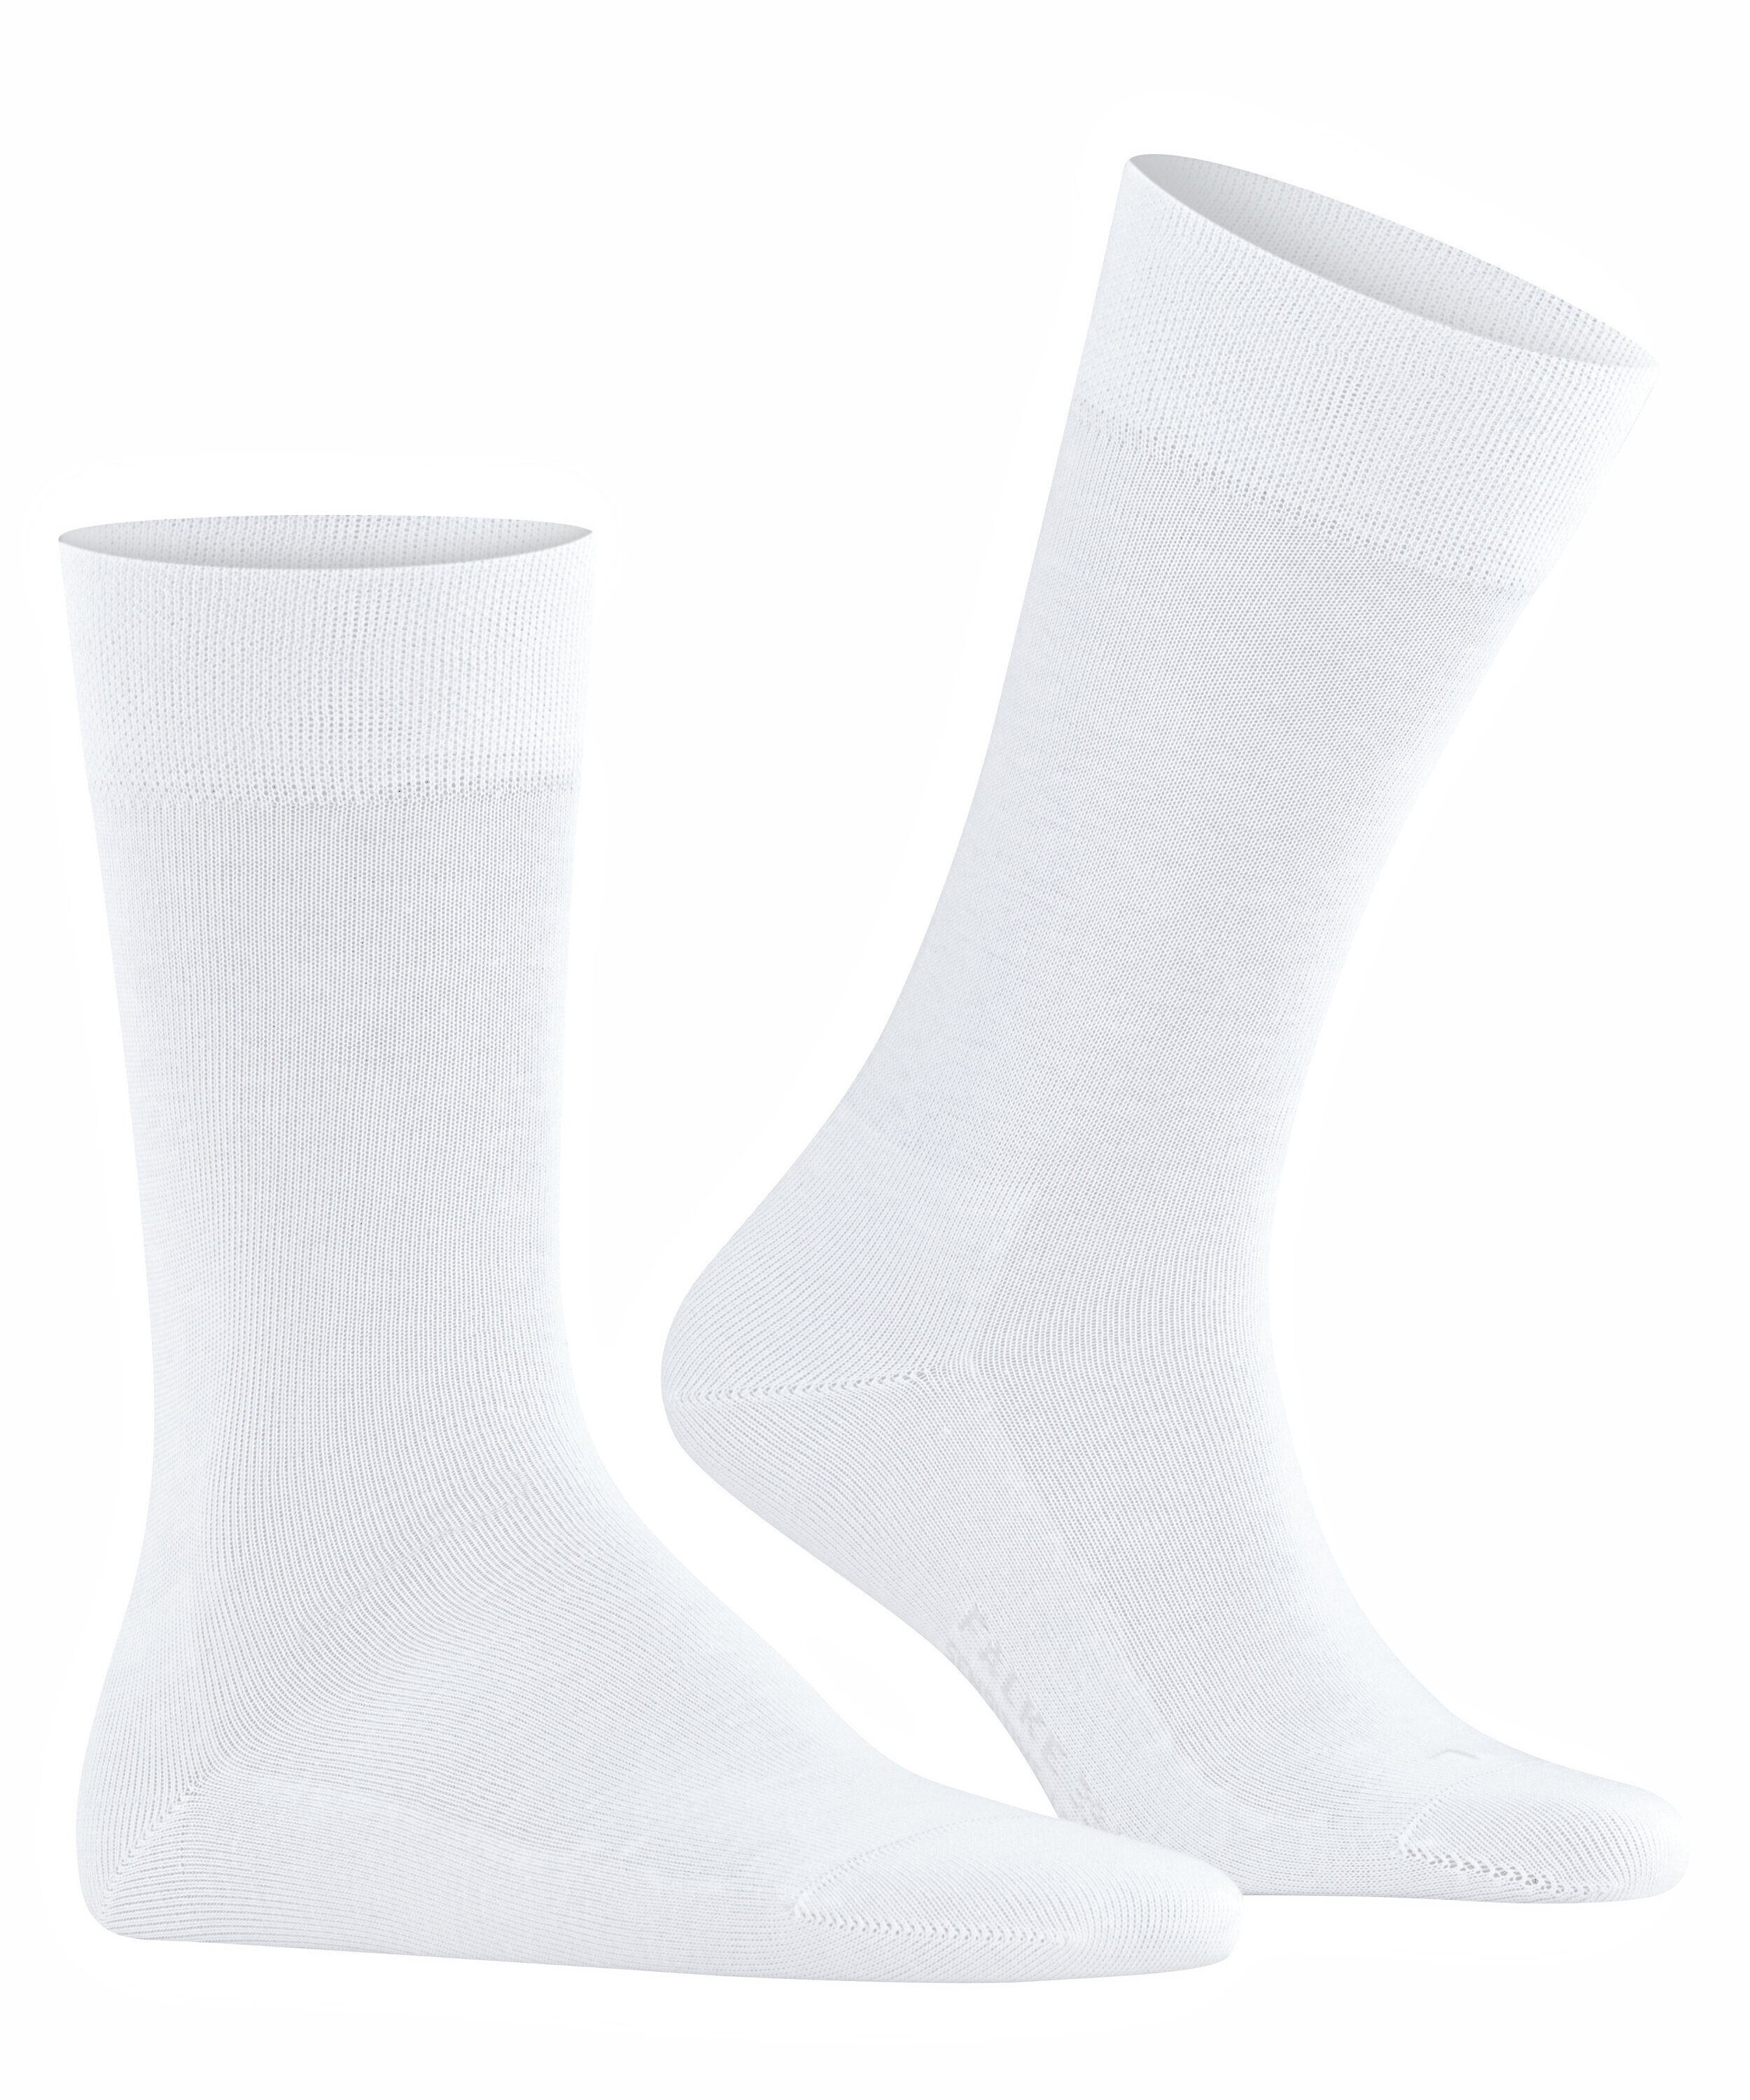 Herren-Socken "Sensitive London" mit druckfreiem Bund aus elastischer Baumwolle